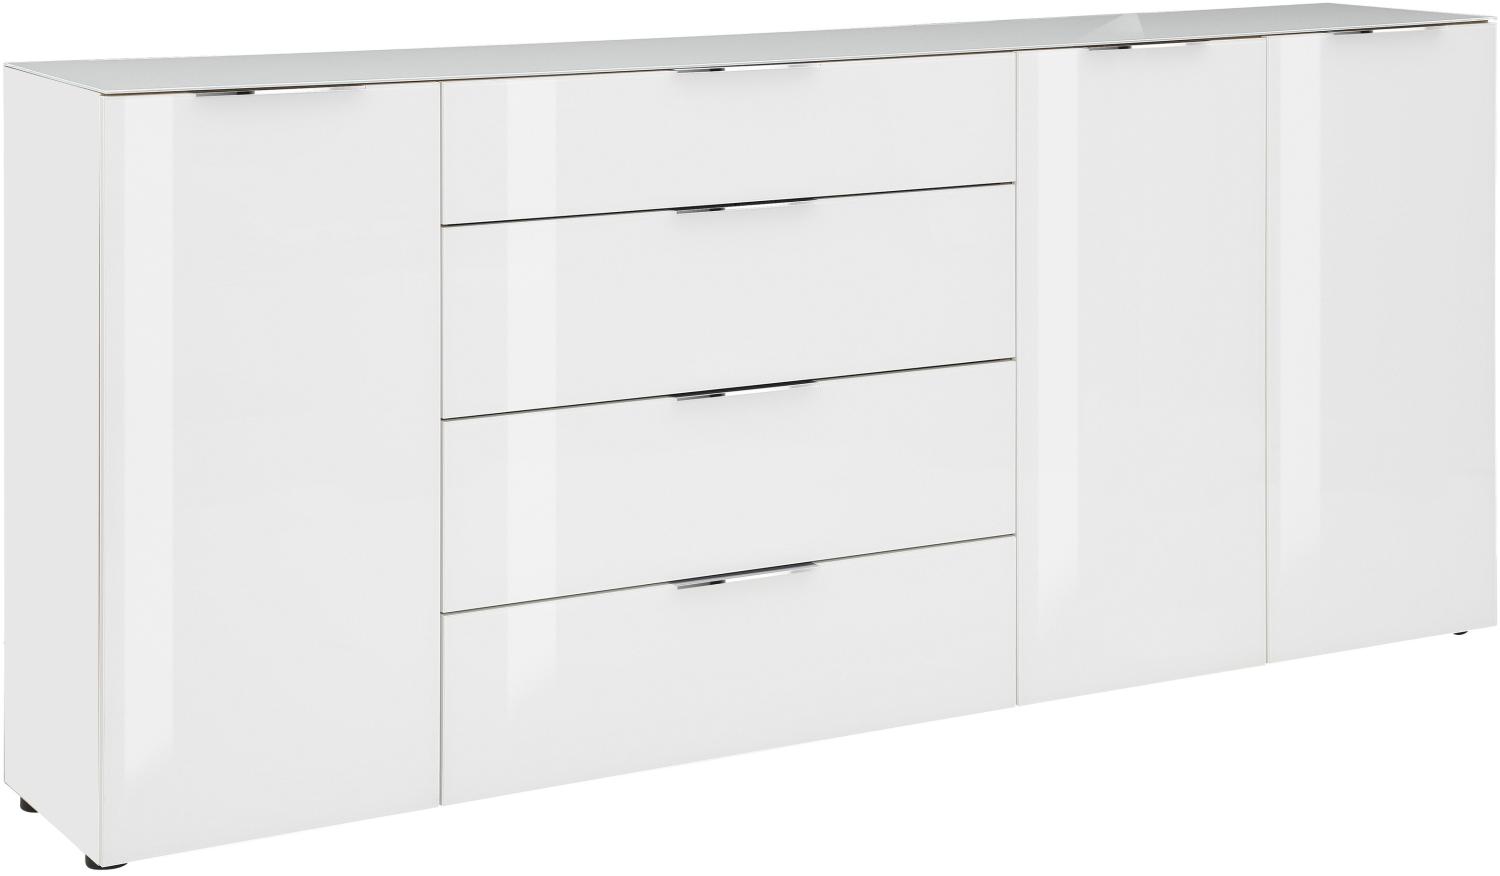 Kommode "78263468" in weiß matt - Weißglas mit 4 Schubladen und 3 Türen. Abmessungen (BxHxT) 226x99x40 cm Bild 1